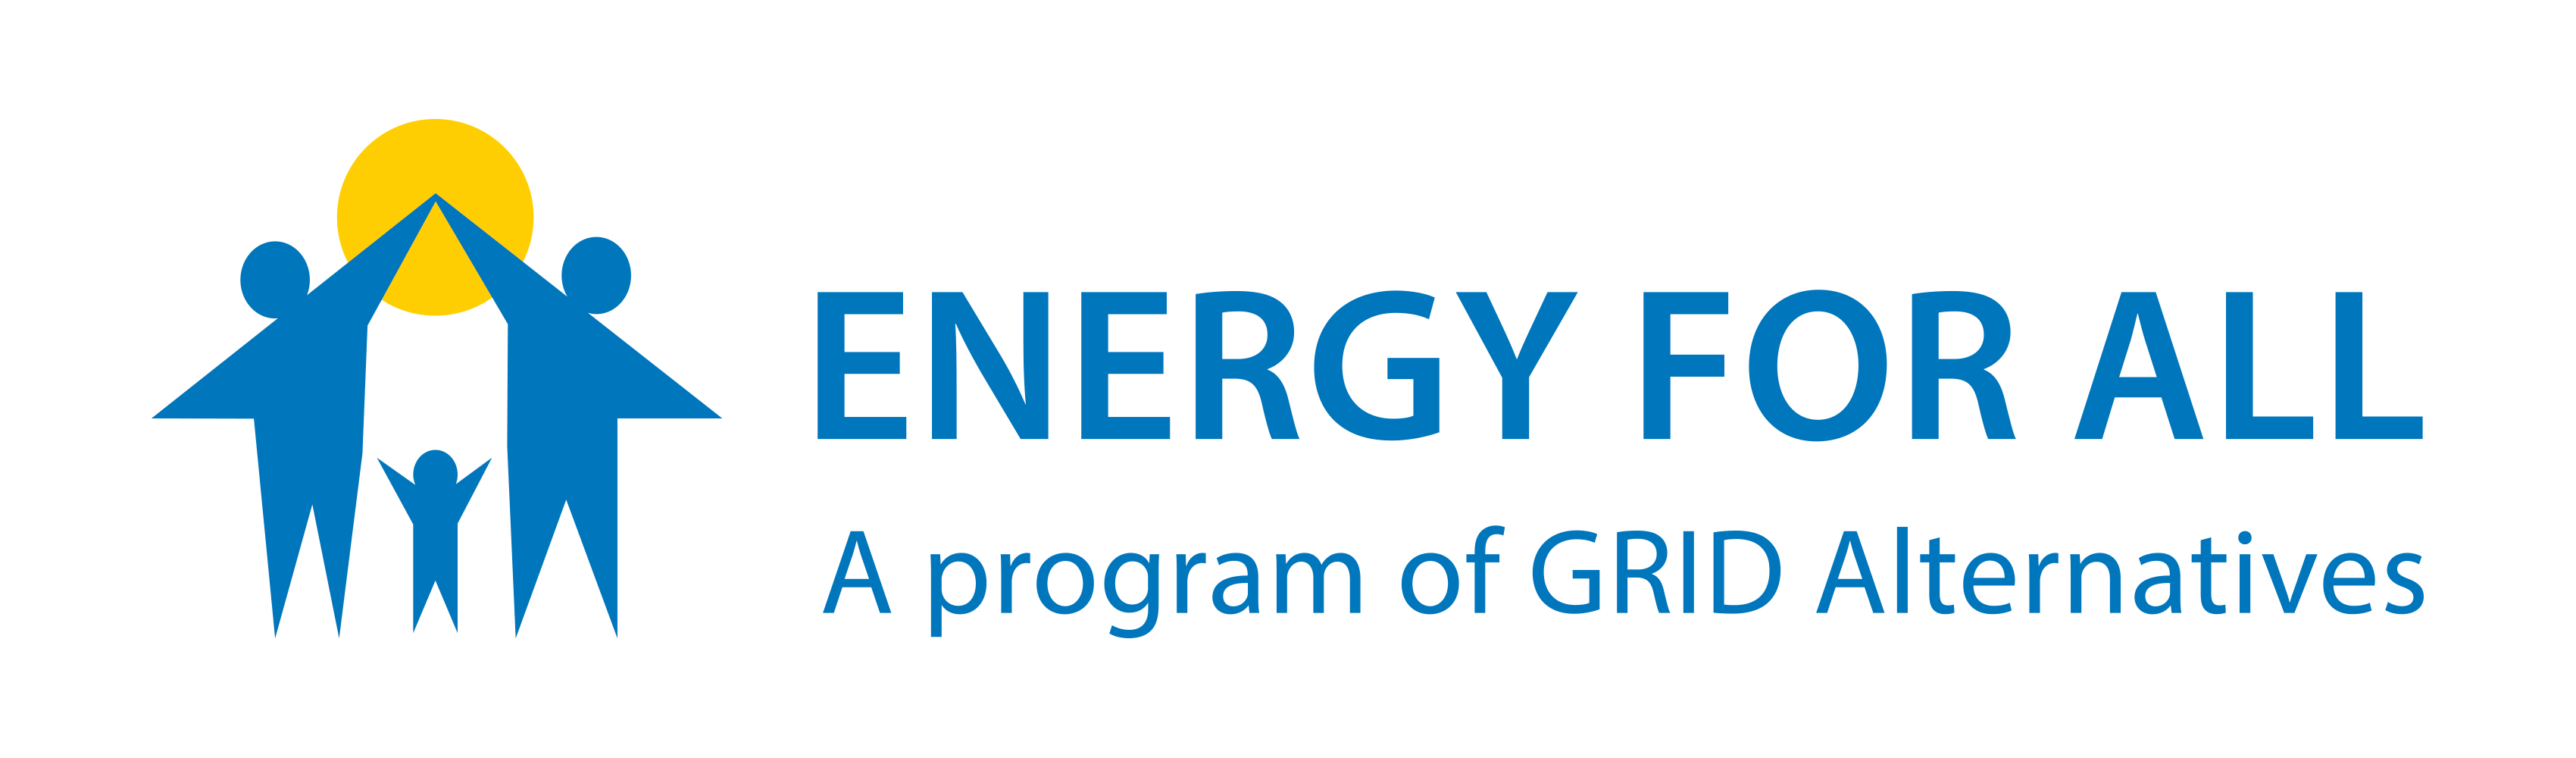 ロゴ、Energy For Allは、GRID Alternativesのプログラム、太陽の後ろで子供をハイタッチするXNUMX人の親のイラストを言います